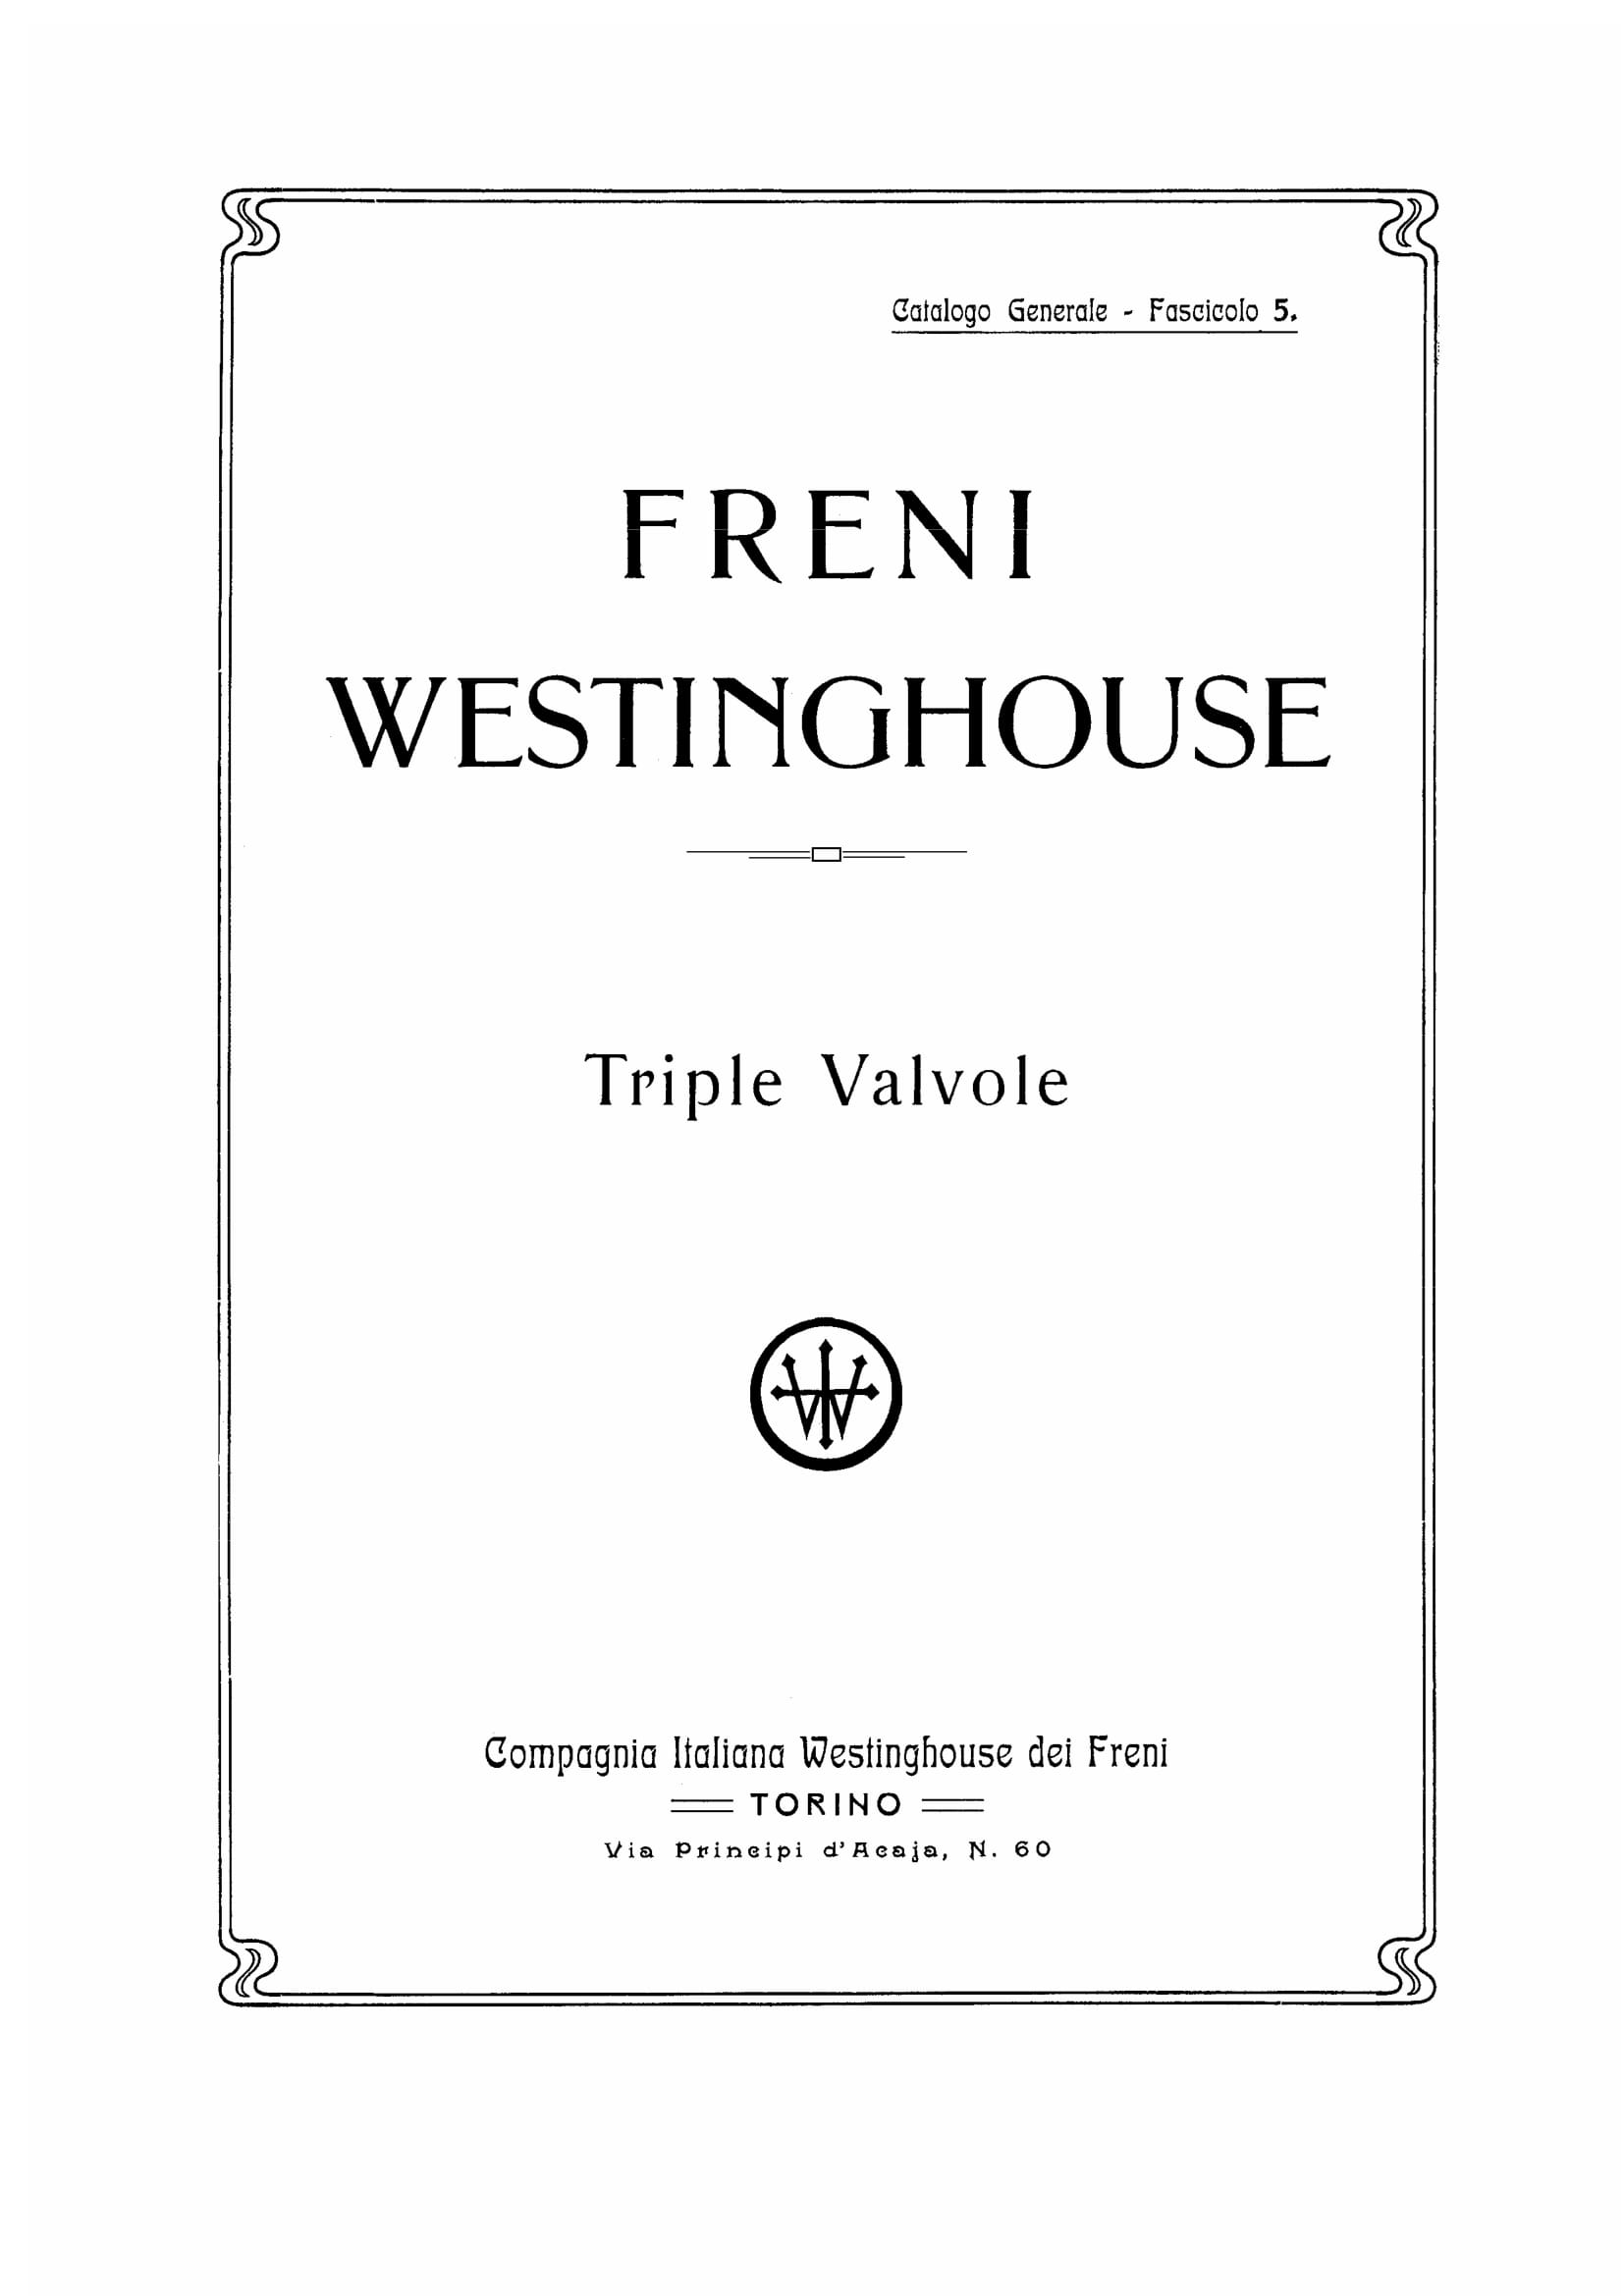 CATALOGO WESTINGHOUSE-105